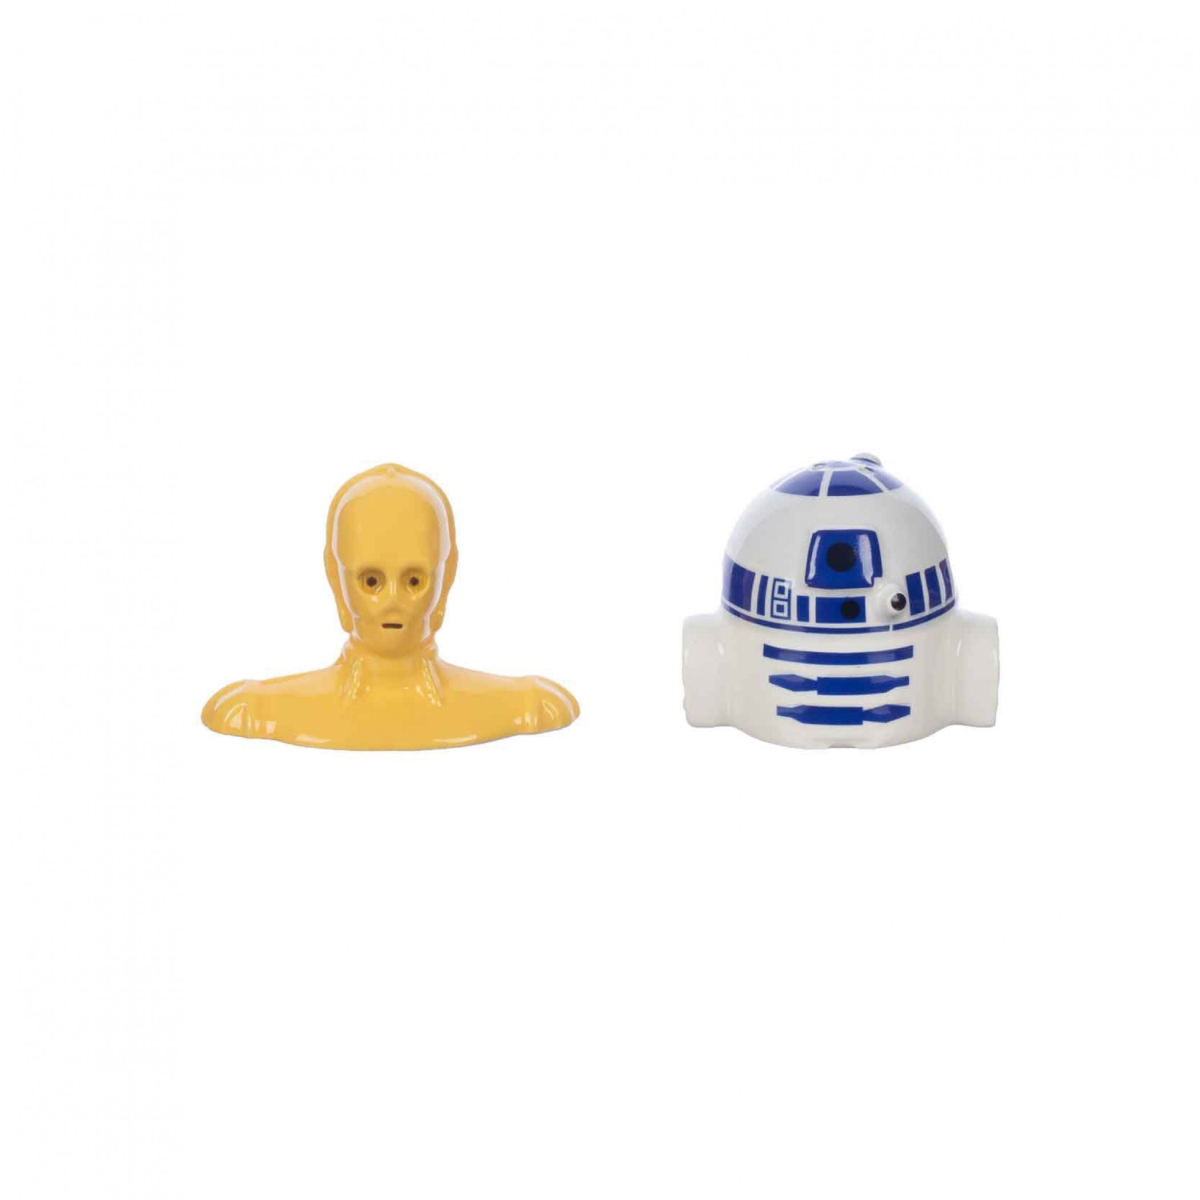 Picture of Star Wars 838058 Star Wars R2-D2 & C-3PO Sculpted Ceramic Salt & Pepper Shaker Set